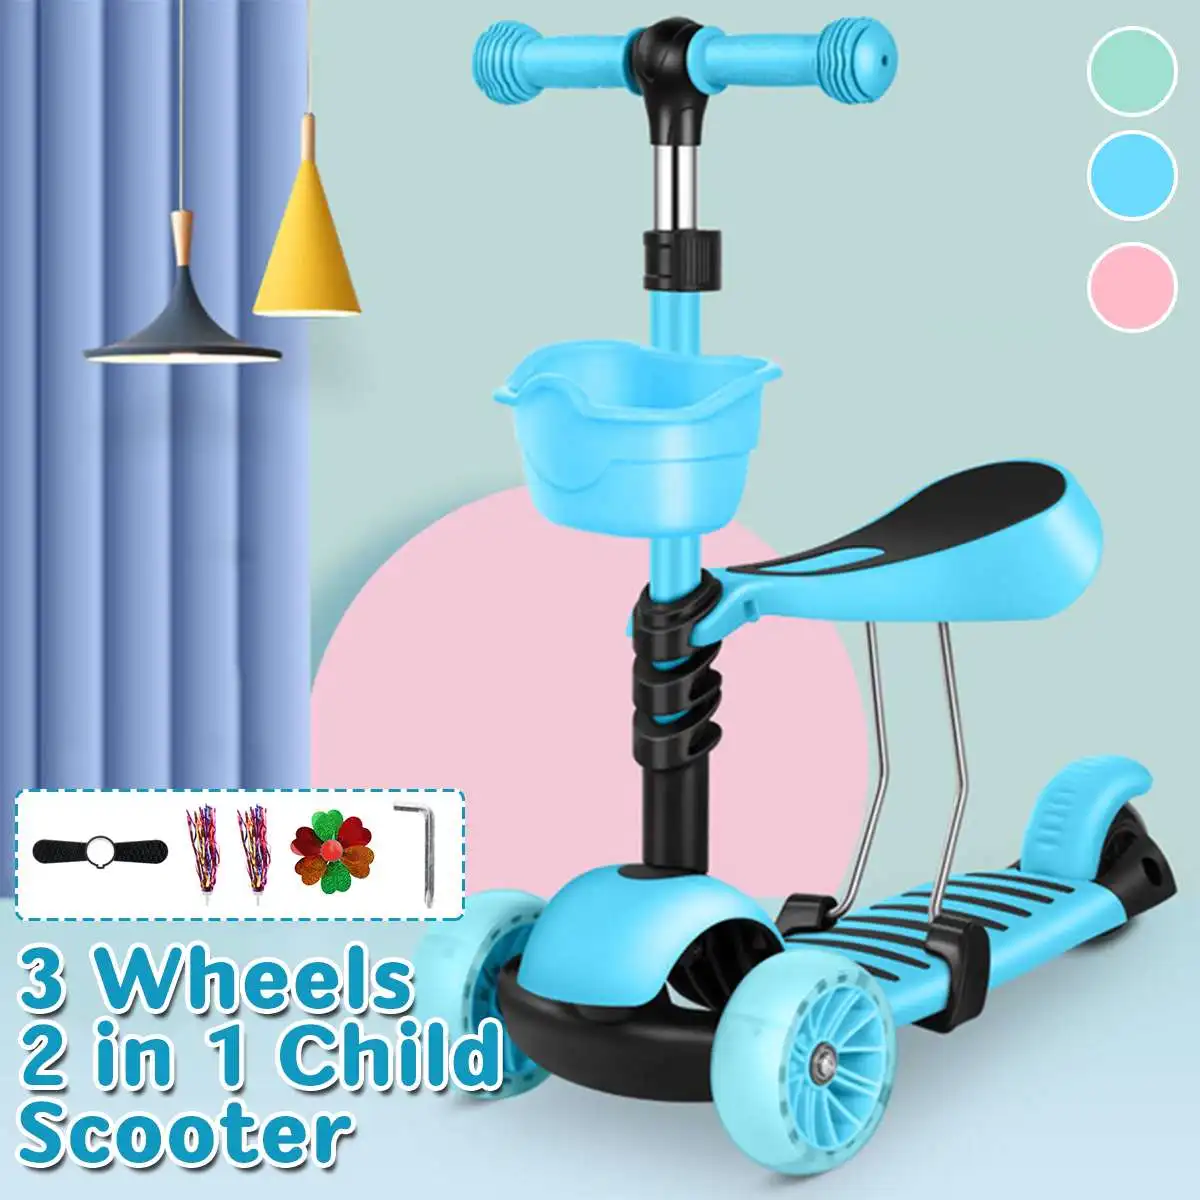 

Детский скутер 3 в 1 со светодиодными колесами, мини-скутер, детские ходунки, скутеры для малышей с регулируемой ручкой, Т-бар и сиденье